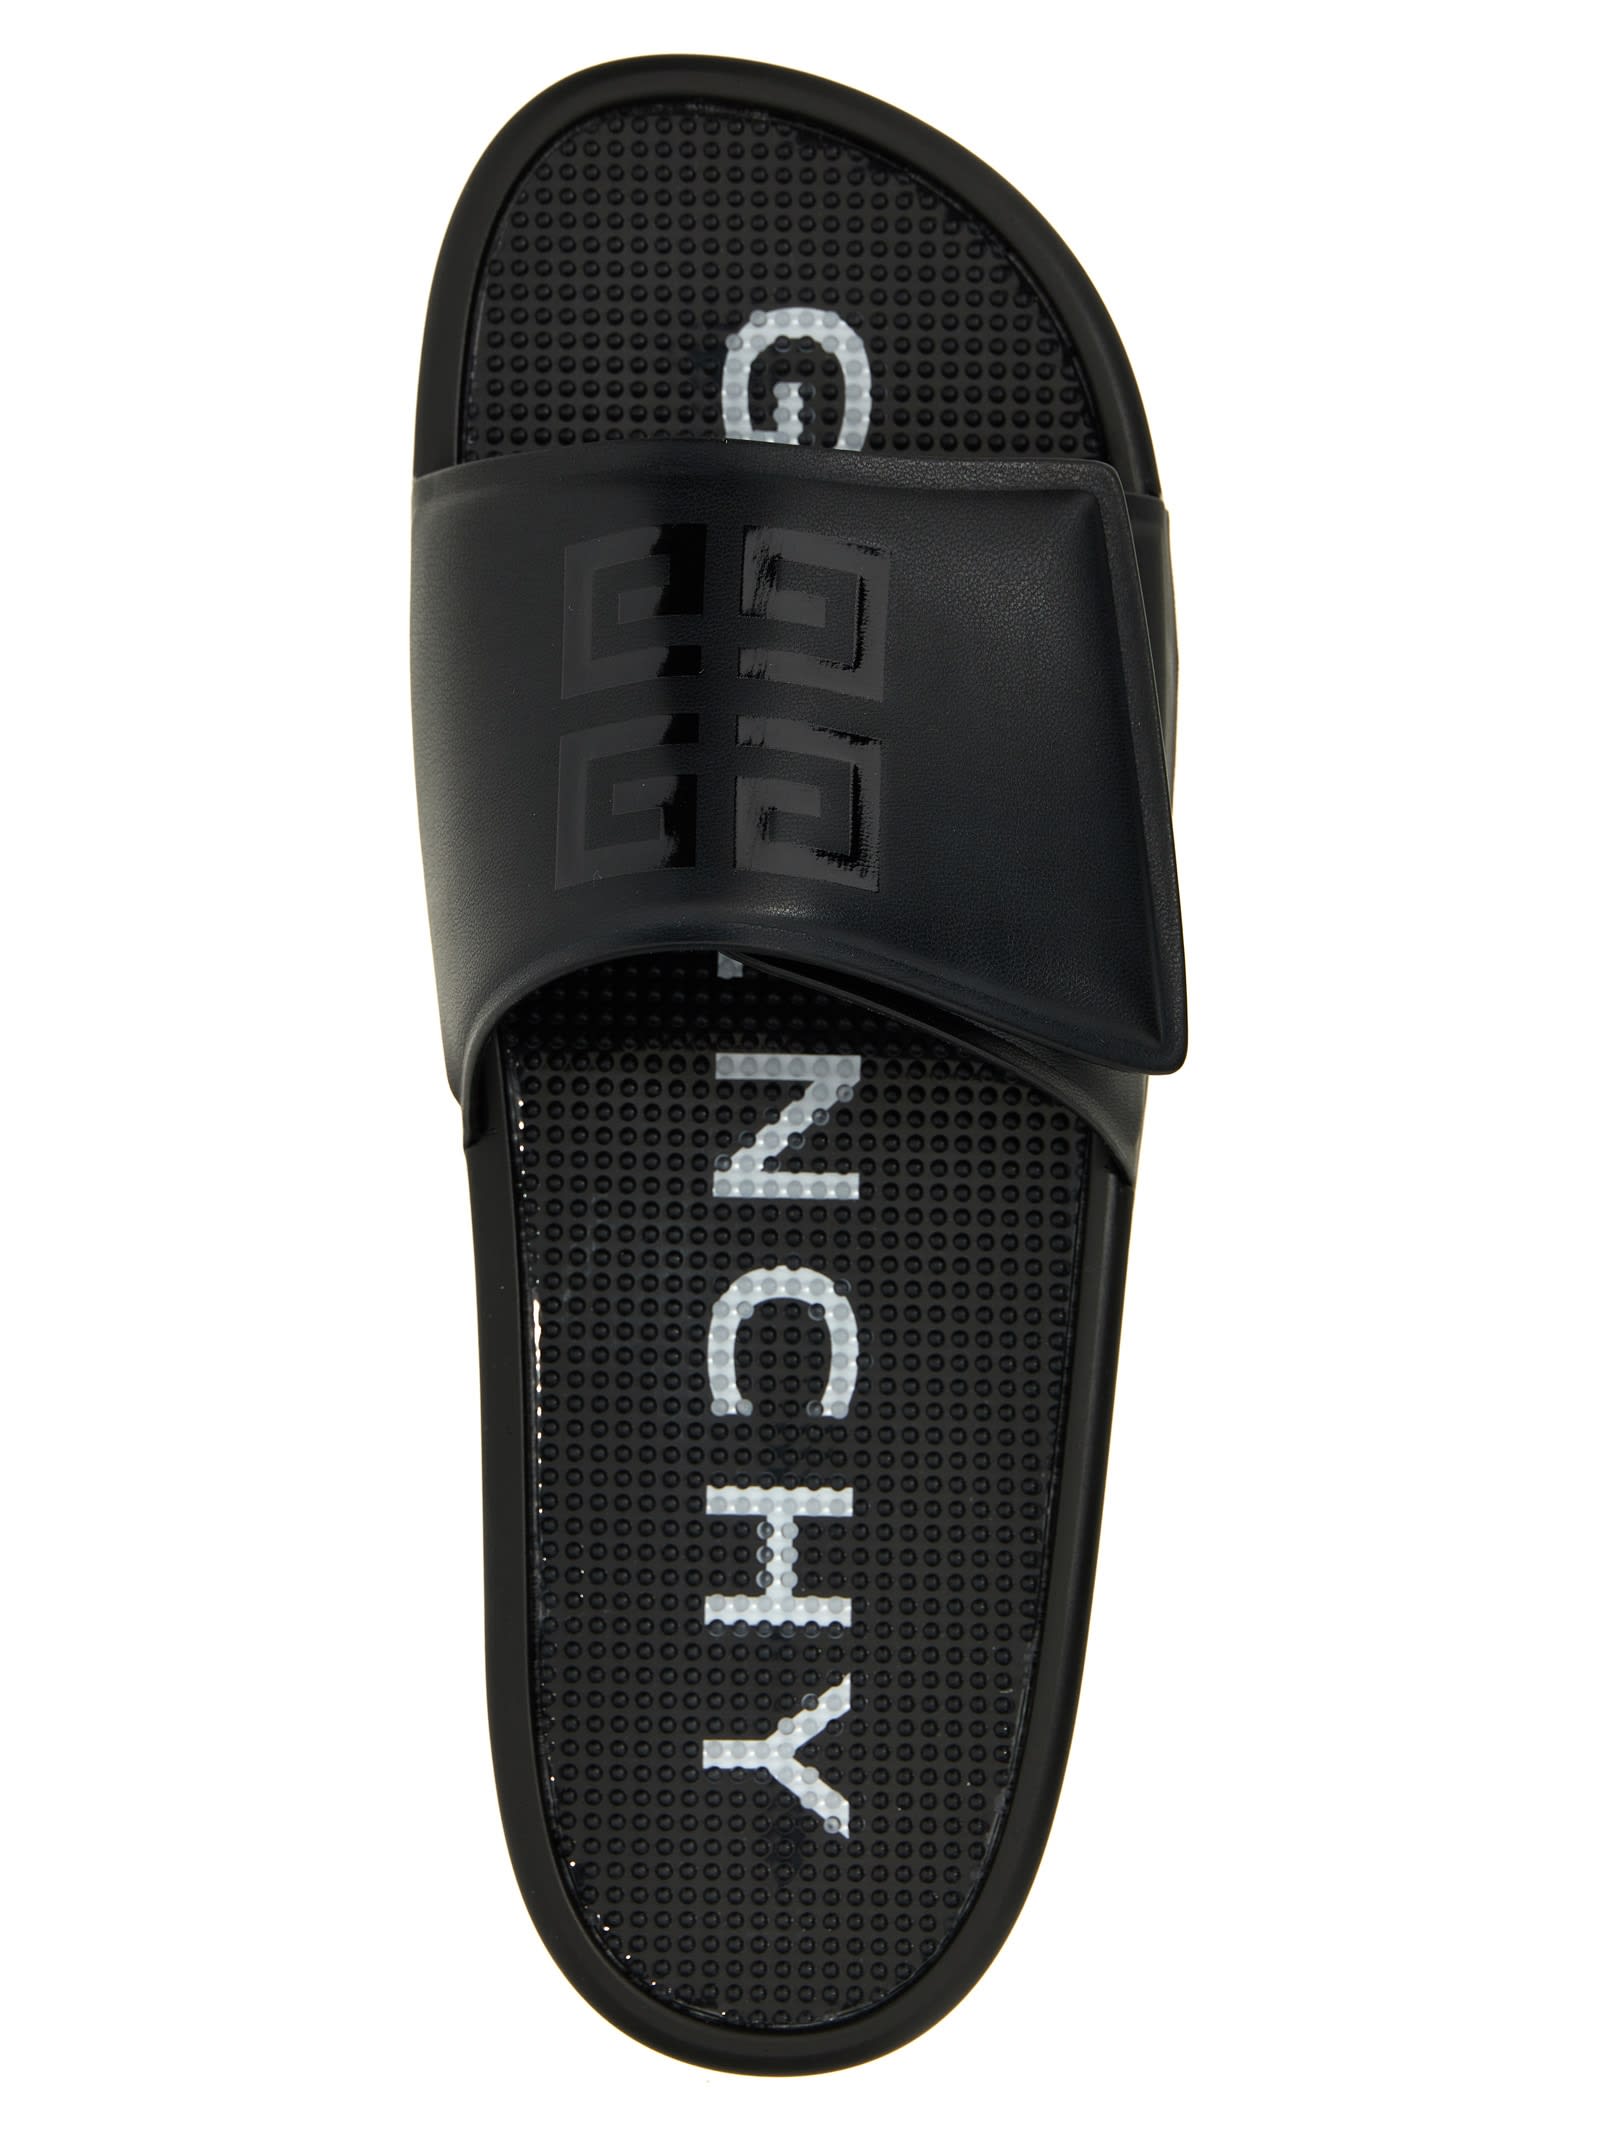 Shop Givenchy Slide Sandals In White/black